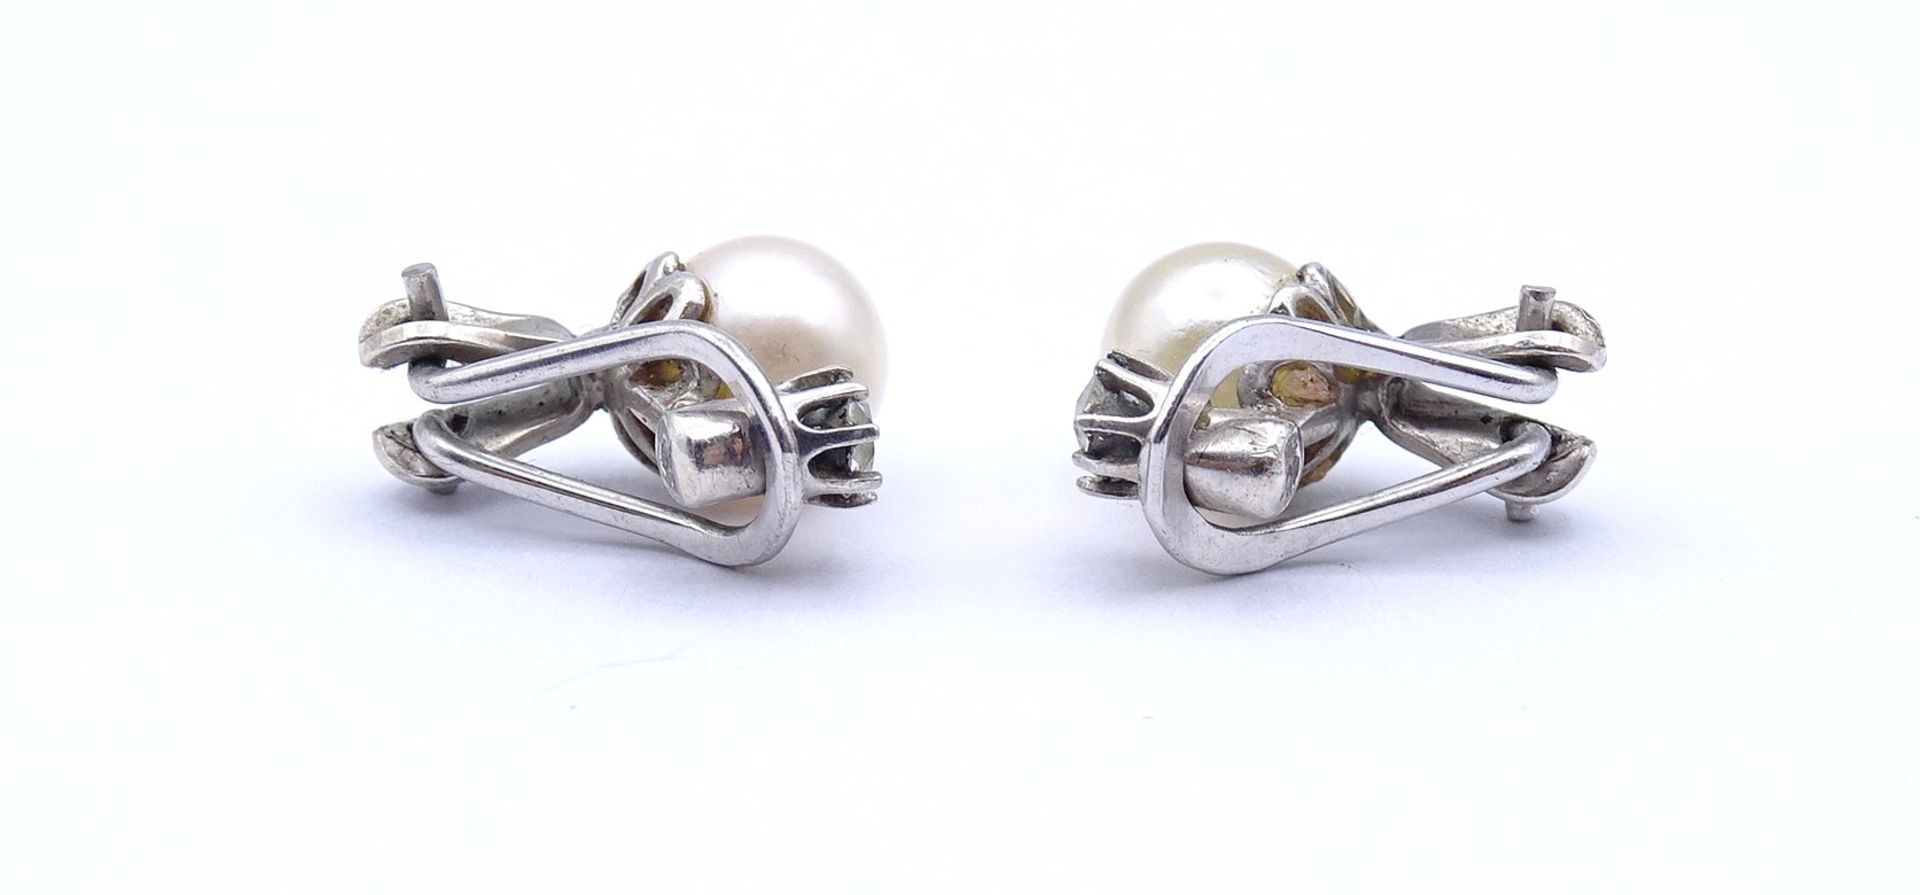 Silber Ohrclips mit Perlen, L. 1,3cm, zus. 3,0g. - Bild 3 aus 3